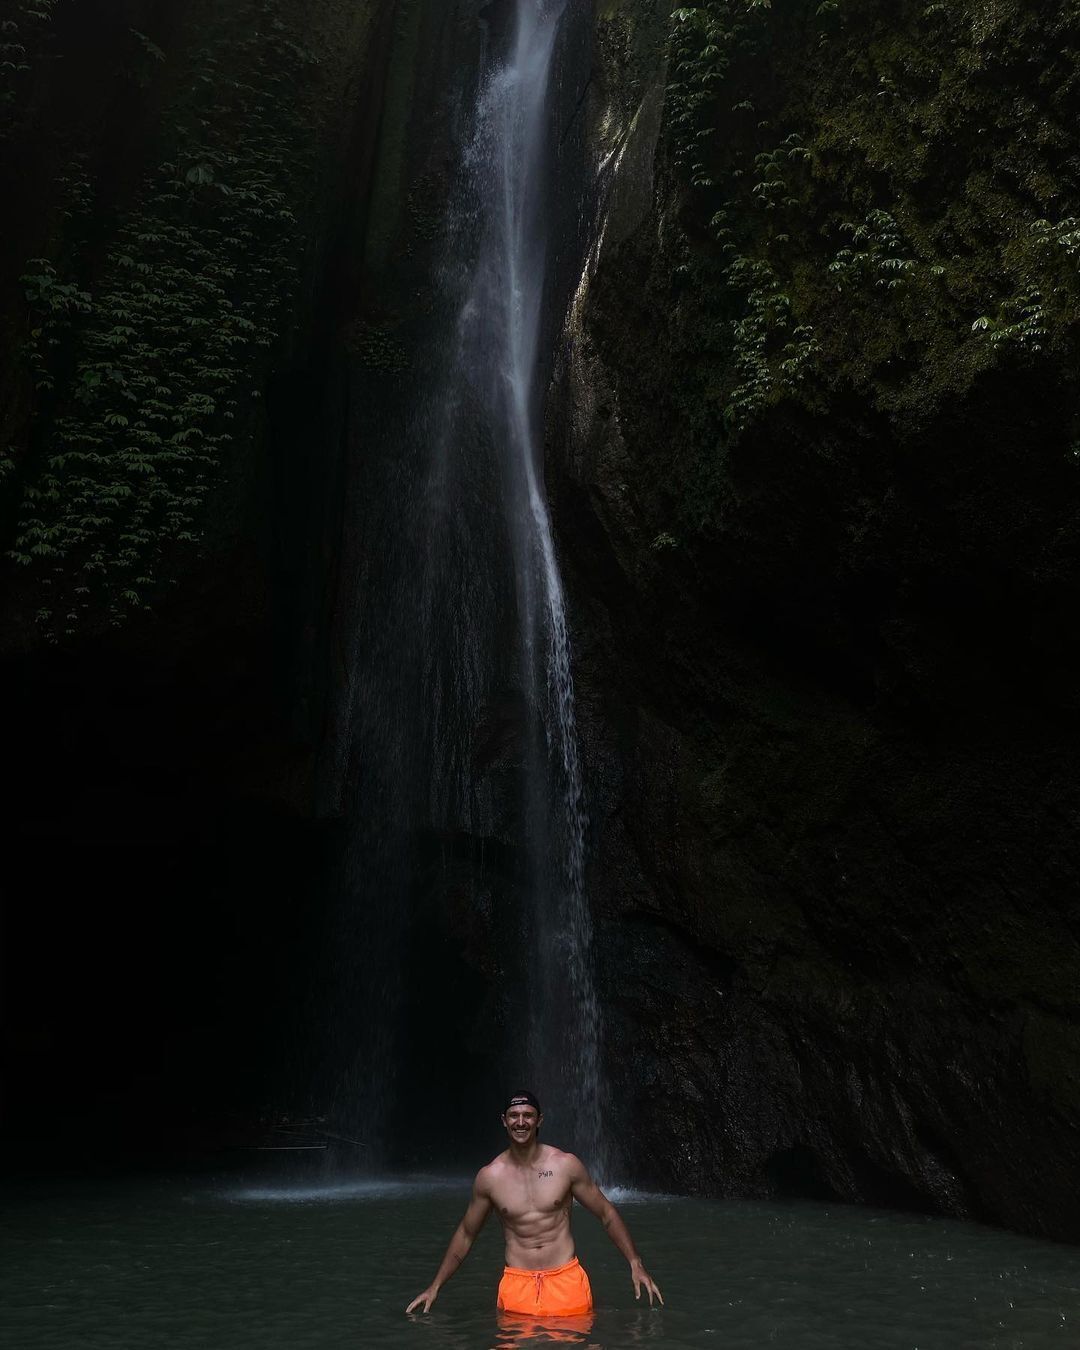 Цимбалюк побывал на Бали и объяснил, чем отдых особенный. Фото